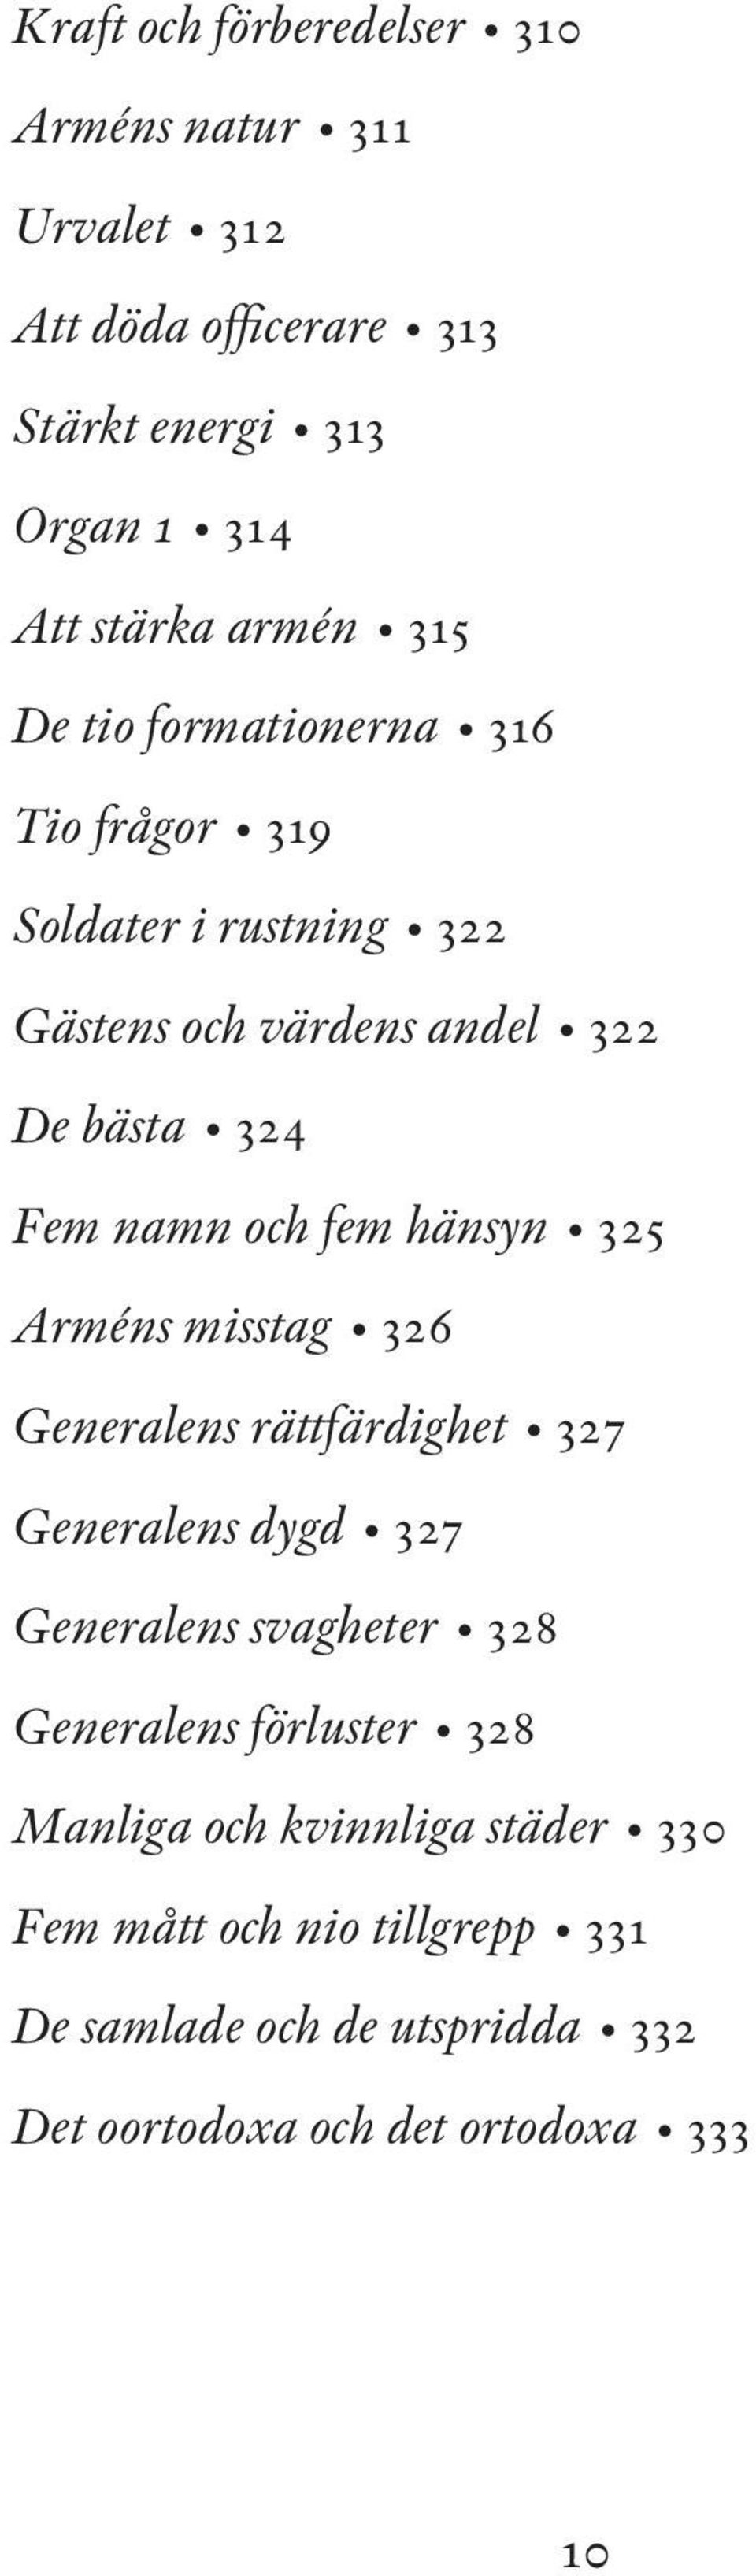 hänsyn 325 Arméns misstag 326 Generalens rättfärdighet 327 Generalens dygd 327 Generalens svagheter 328 Generalens förluster 328